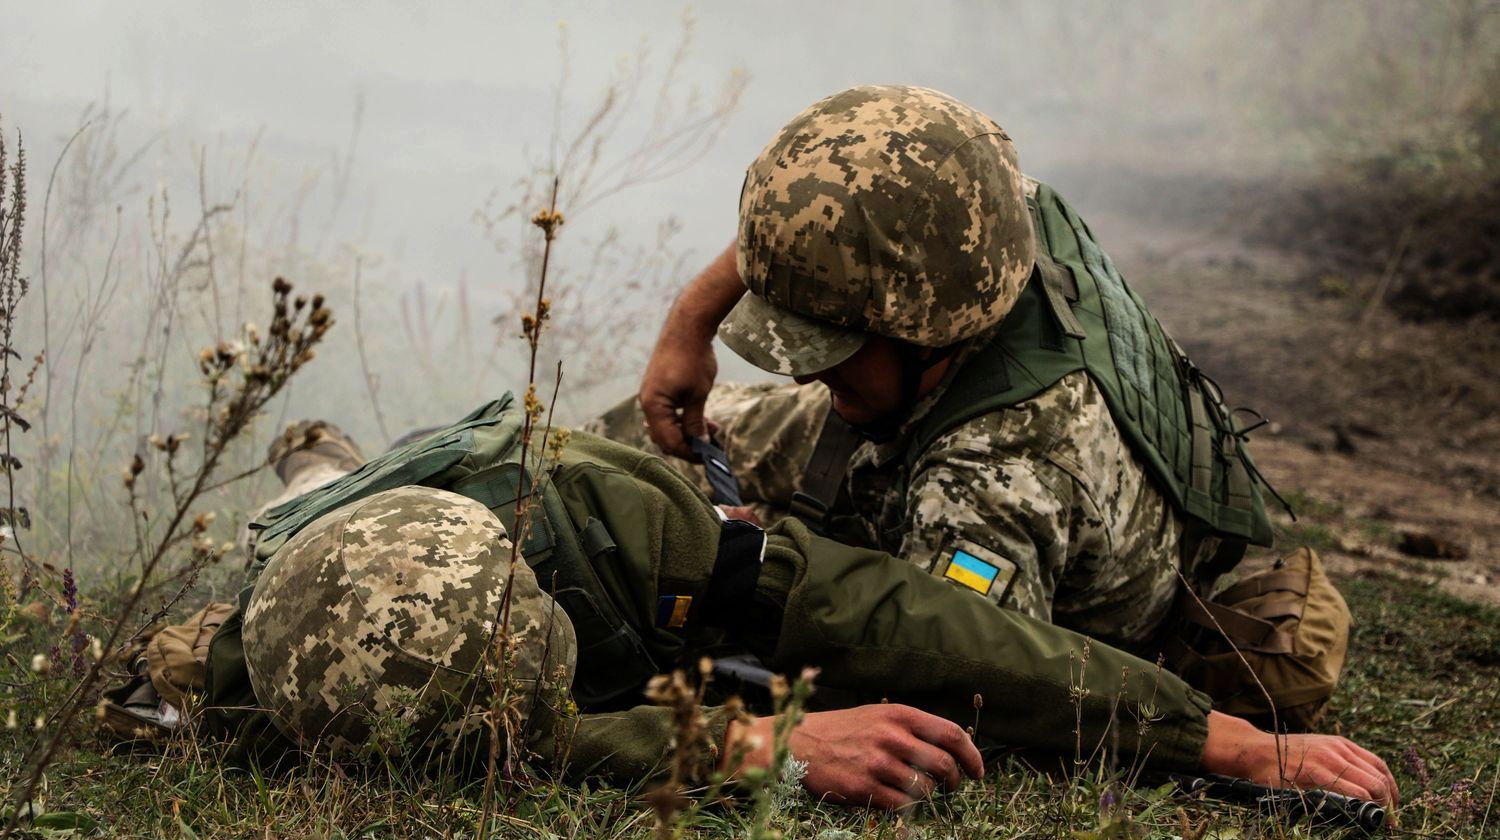 Обострение на Донбассе: наемники применили тяжелую артиллерию, ВСУ несут потери